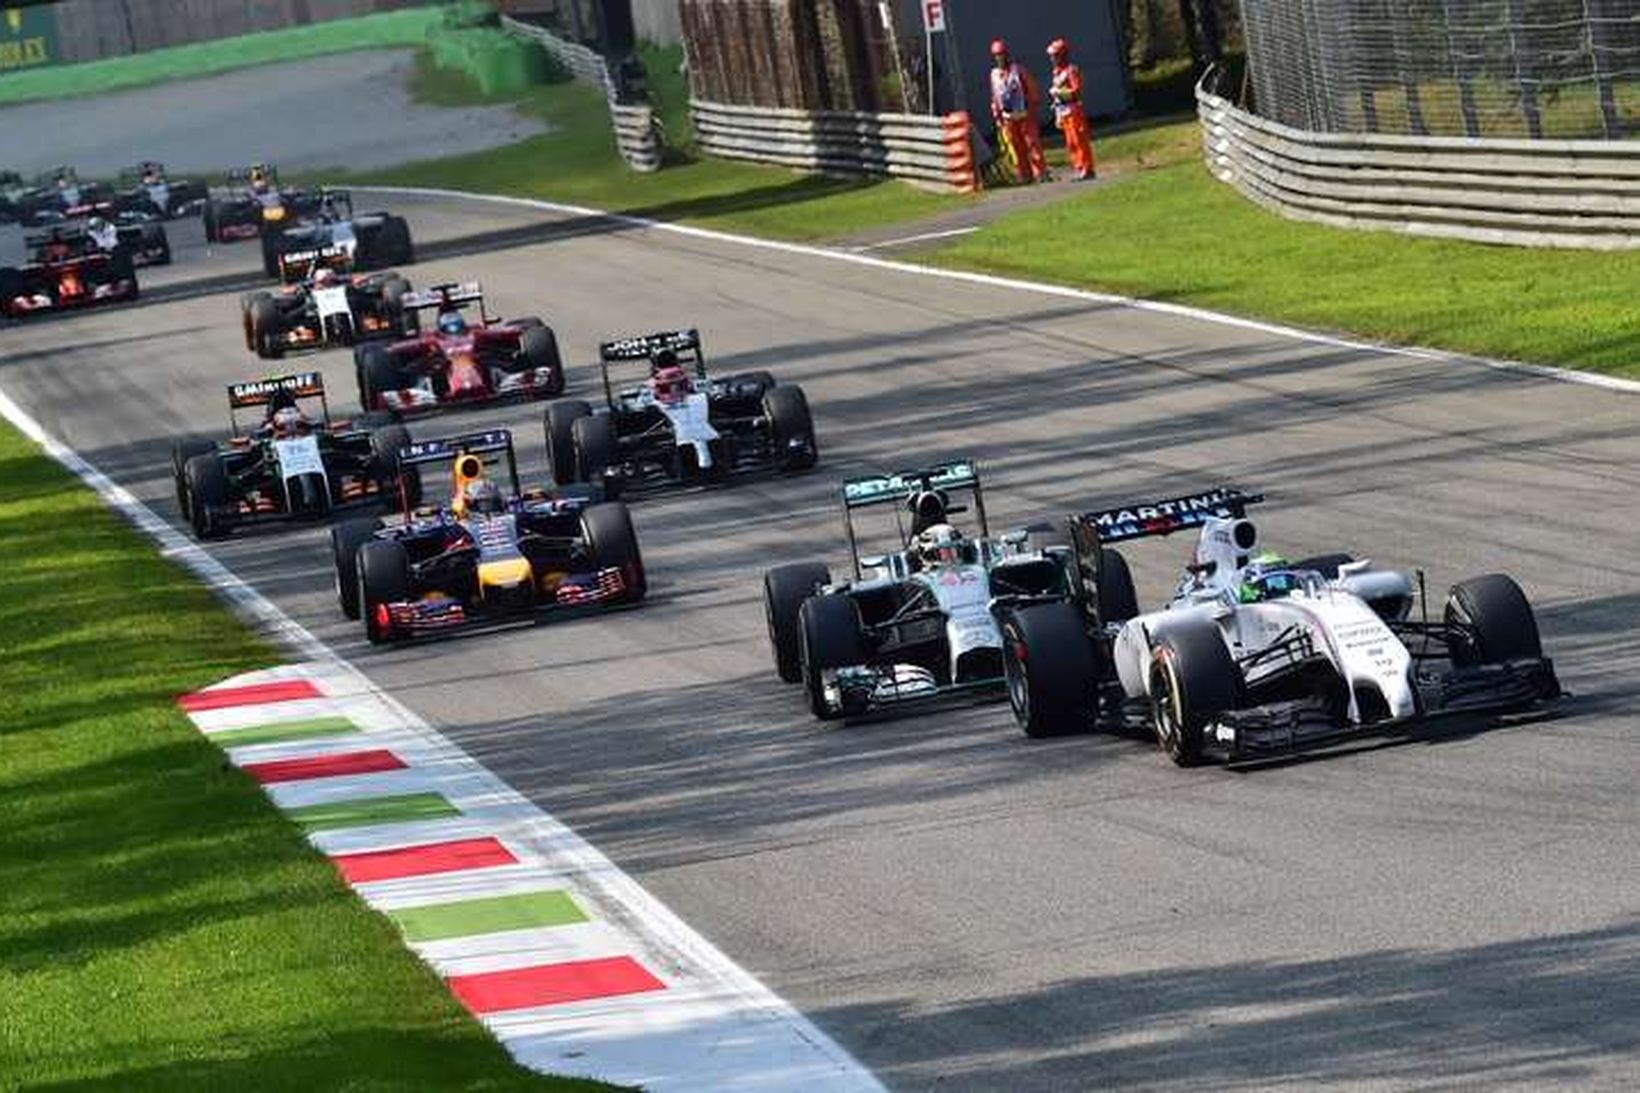 Felipe Massa fremstur í fylkingu í Monza í dag.